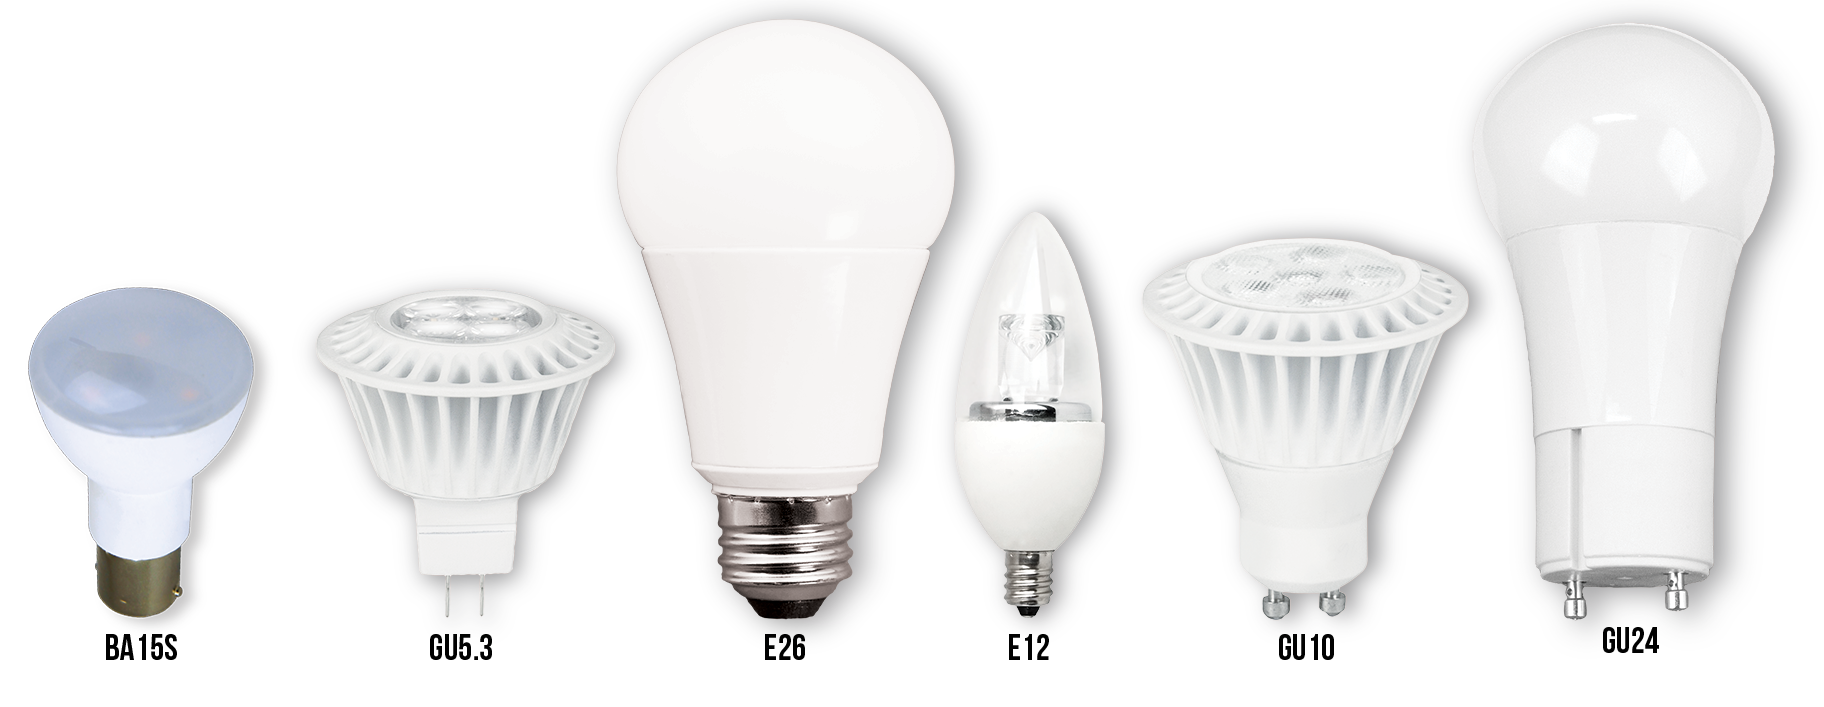 Light Incandescent Bulb Free Transparent Image HQ PNG Image